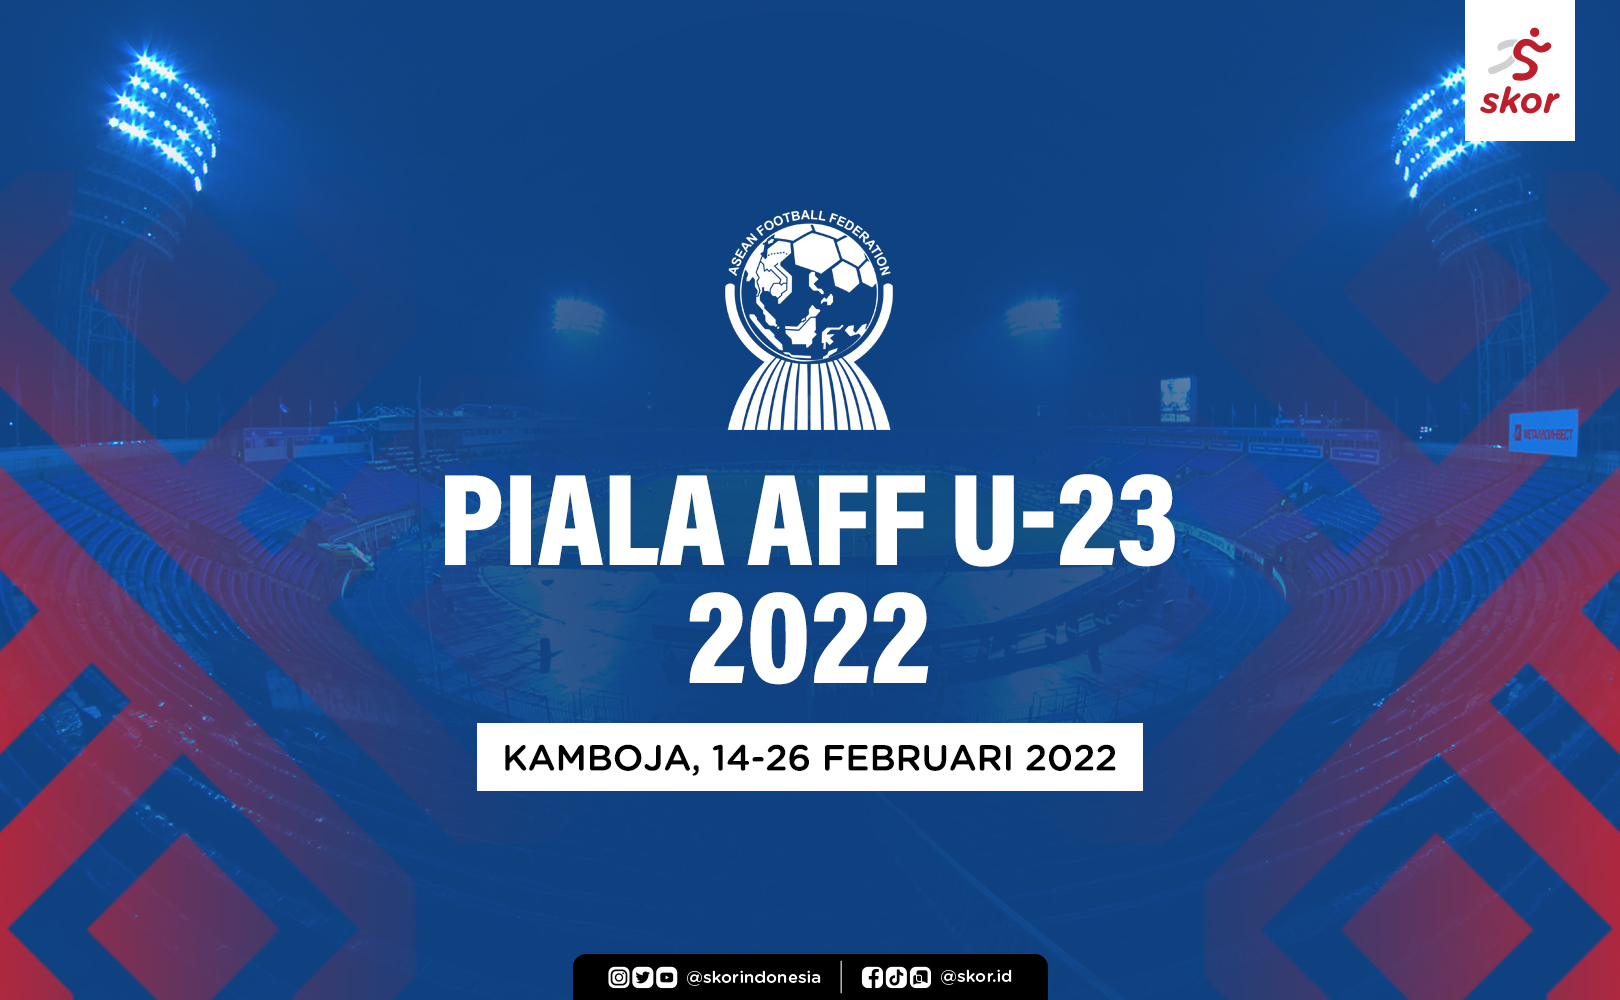 Piala AFF U-23 2022: Jadwal Lengkap, Hasil, dan Klasemen